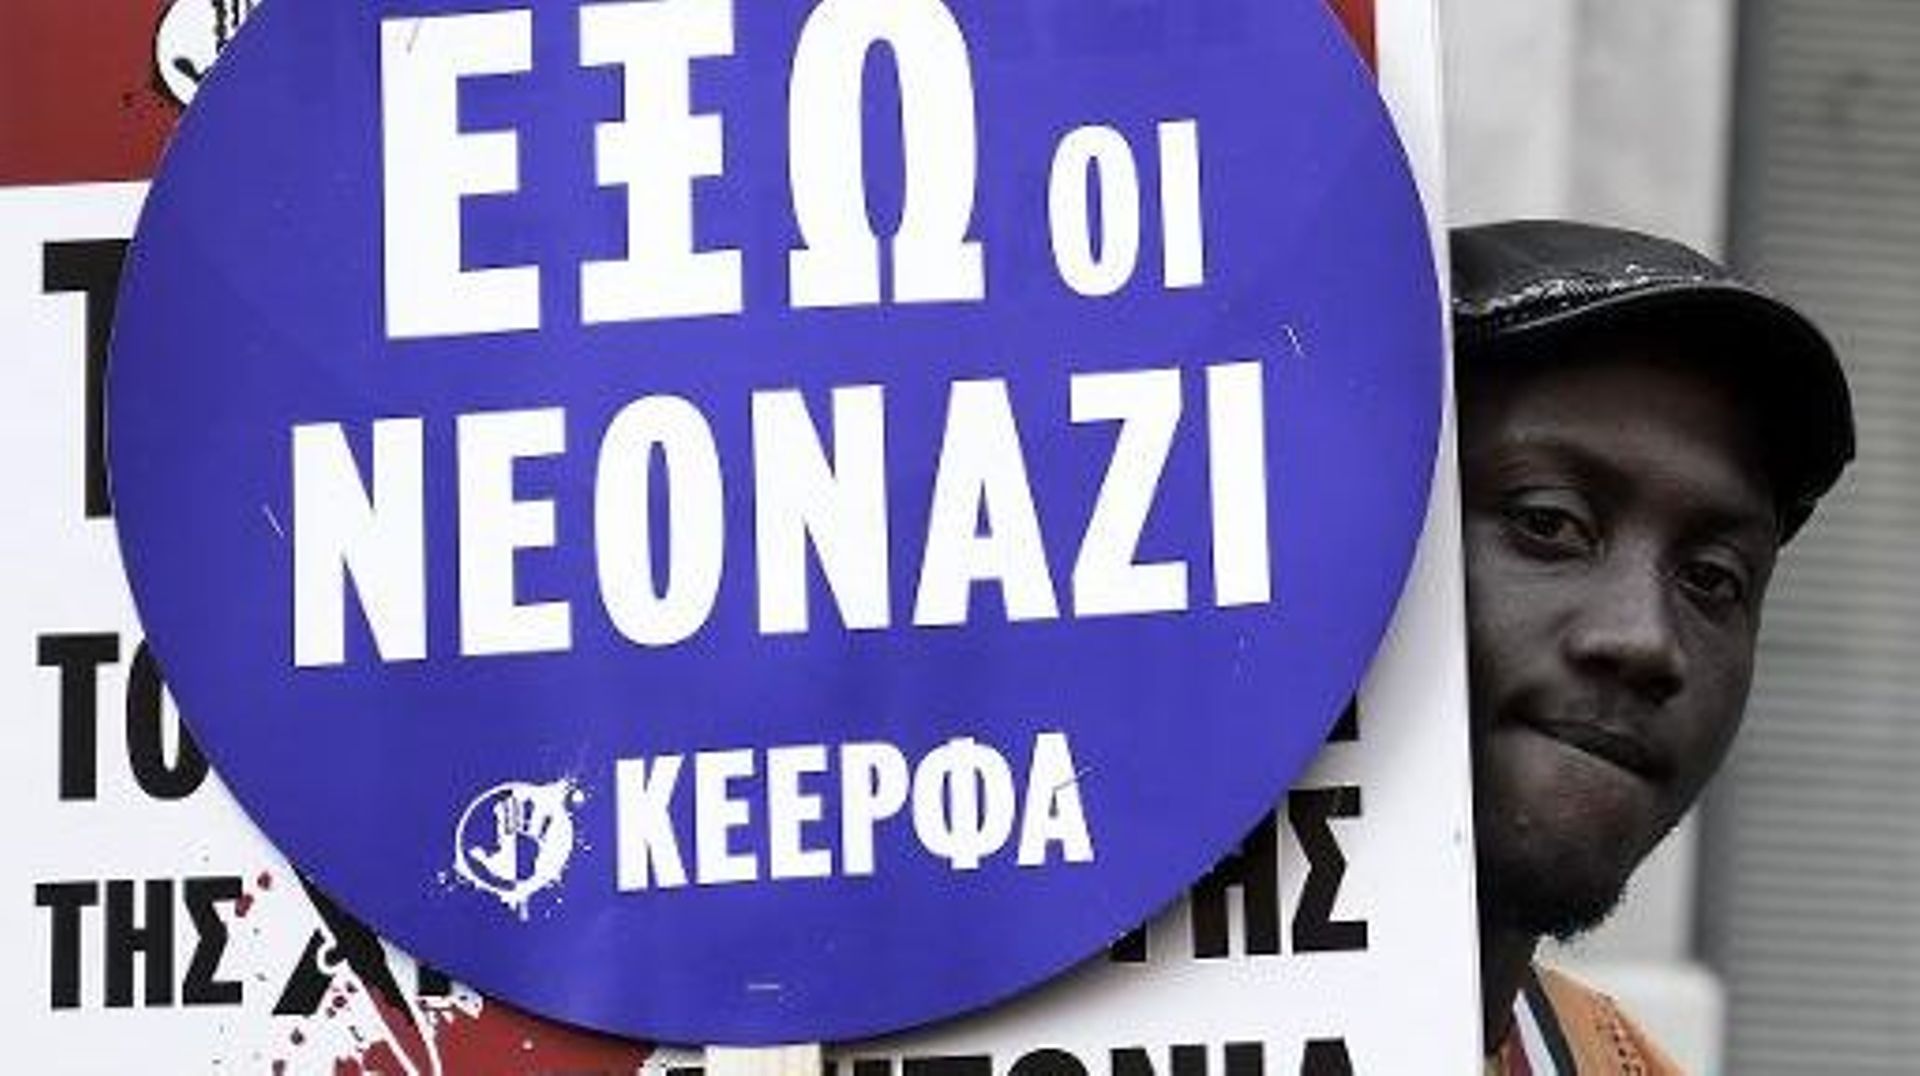 Des milliers de migrants, sympathisants de gauche et des droits de l'homme, manifestent  à Athènes contre "le fascisme" et "le racisme", le 22 mars 2014